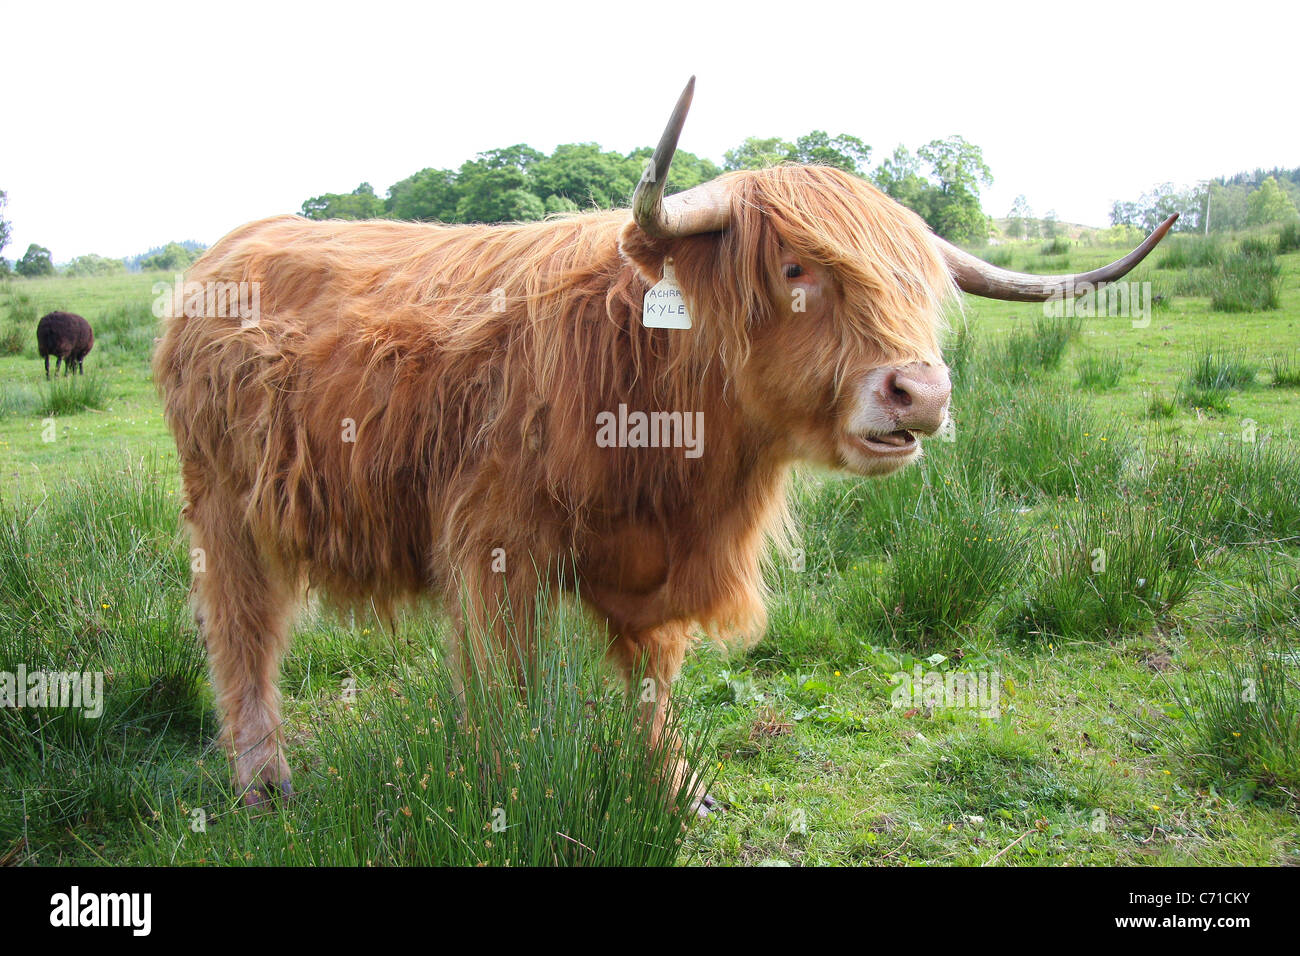 Vache Highland cattle, Ecosse, cornes,pâturage, lochs et glens Banque D'Images